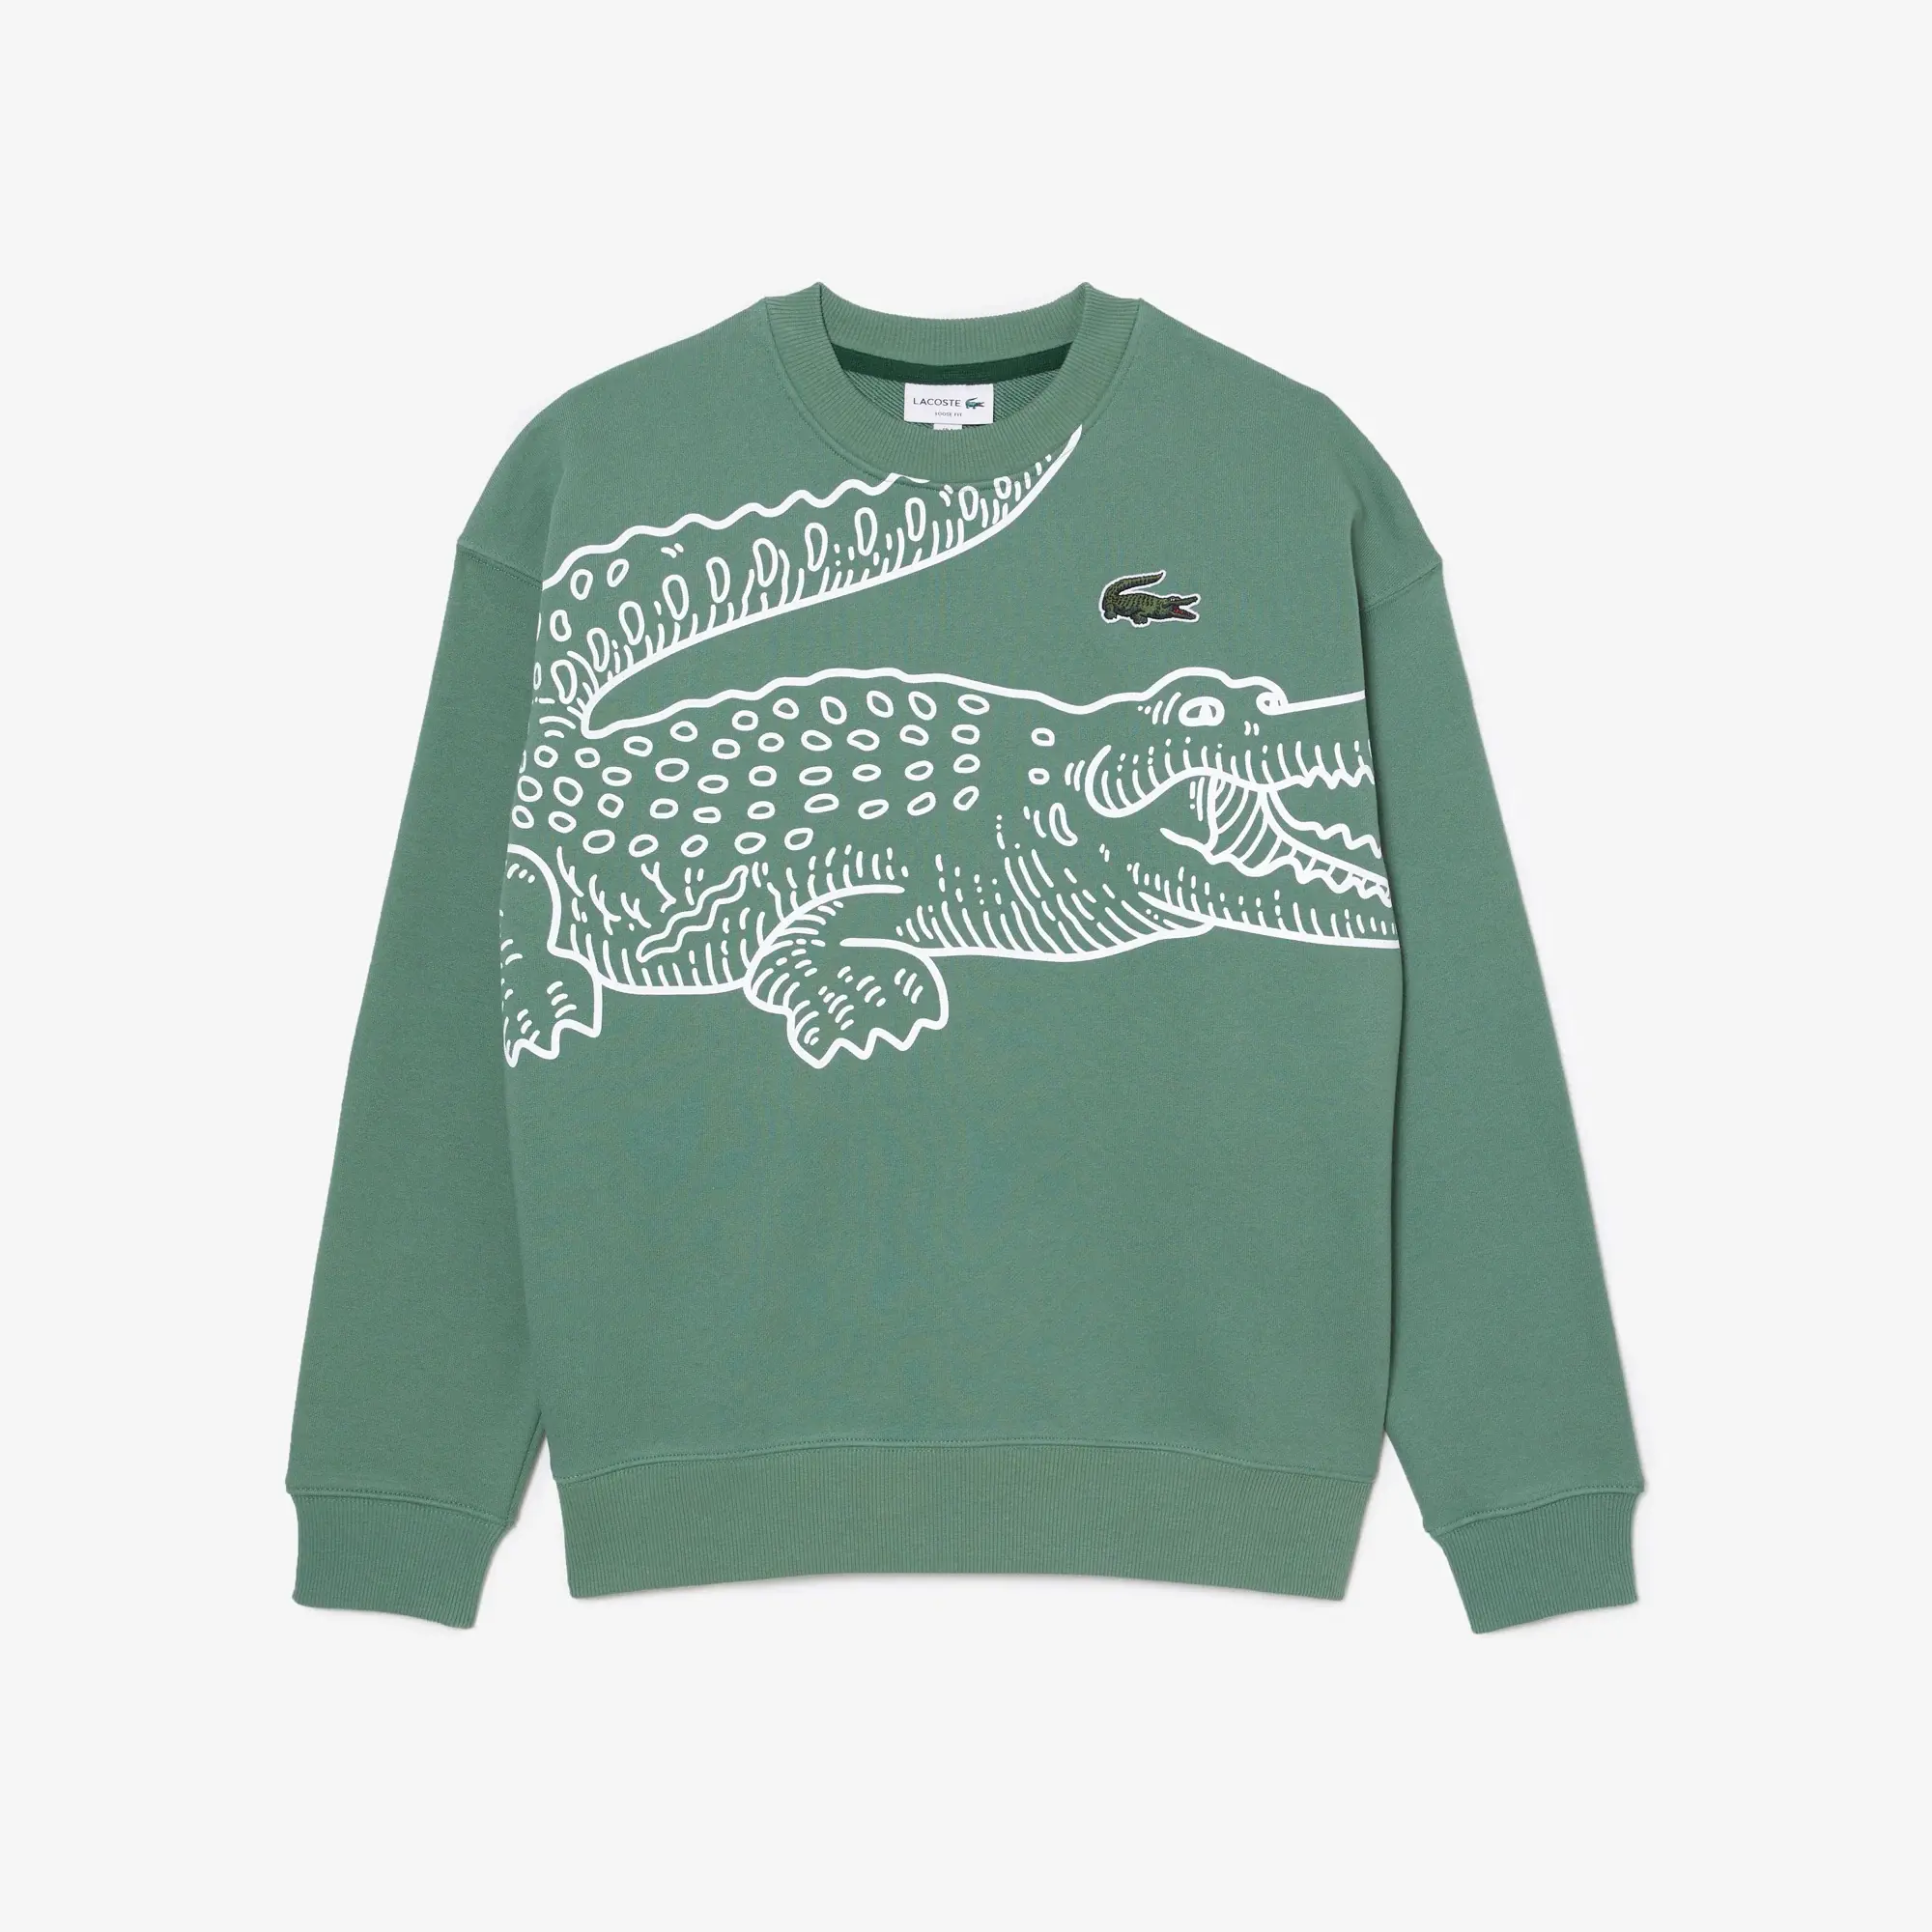 Lacoste Men’s Crew Neck Loose Fit Croc Print Sweatshirt. 2